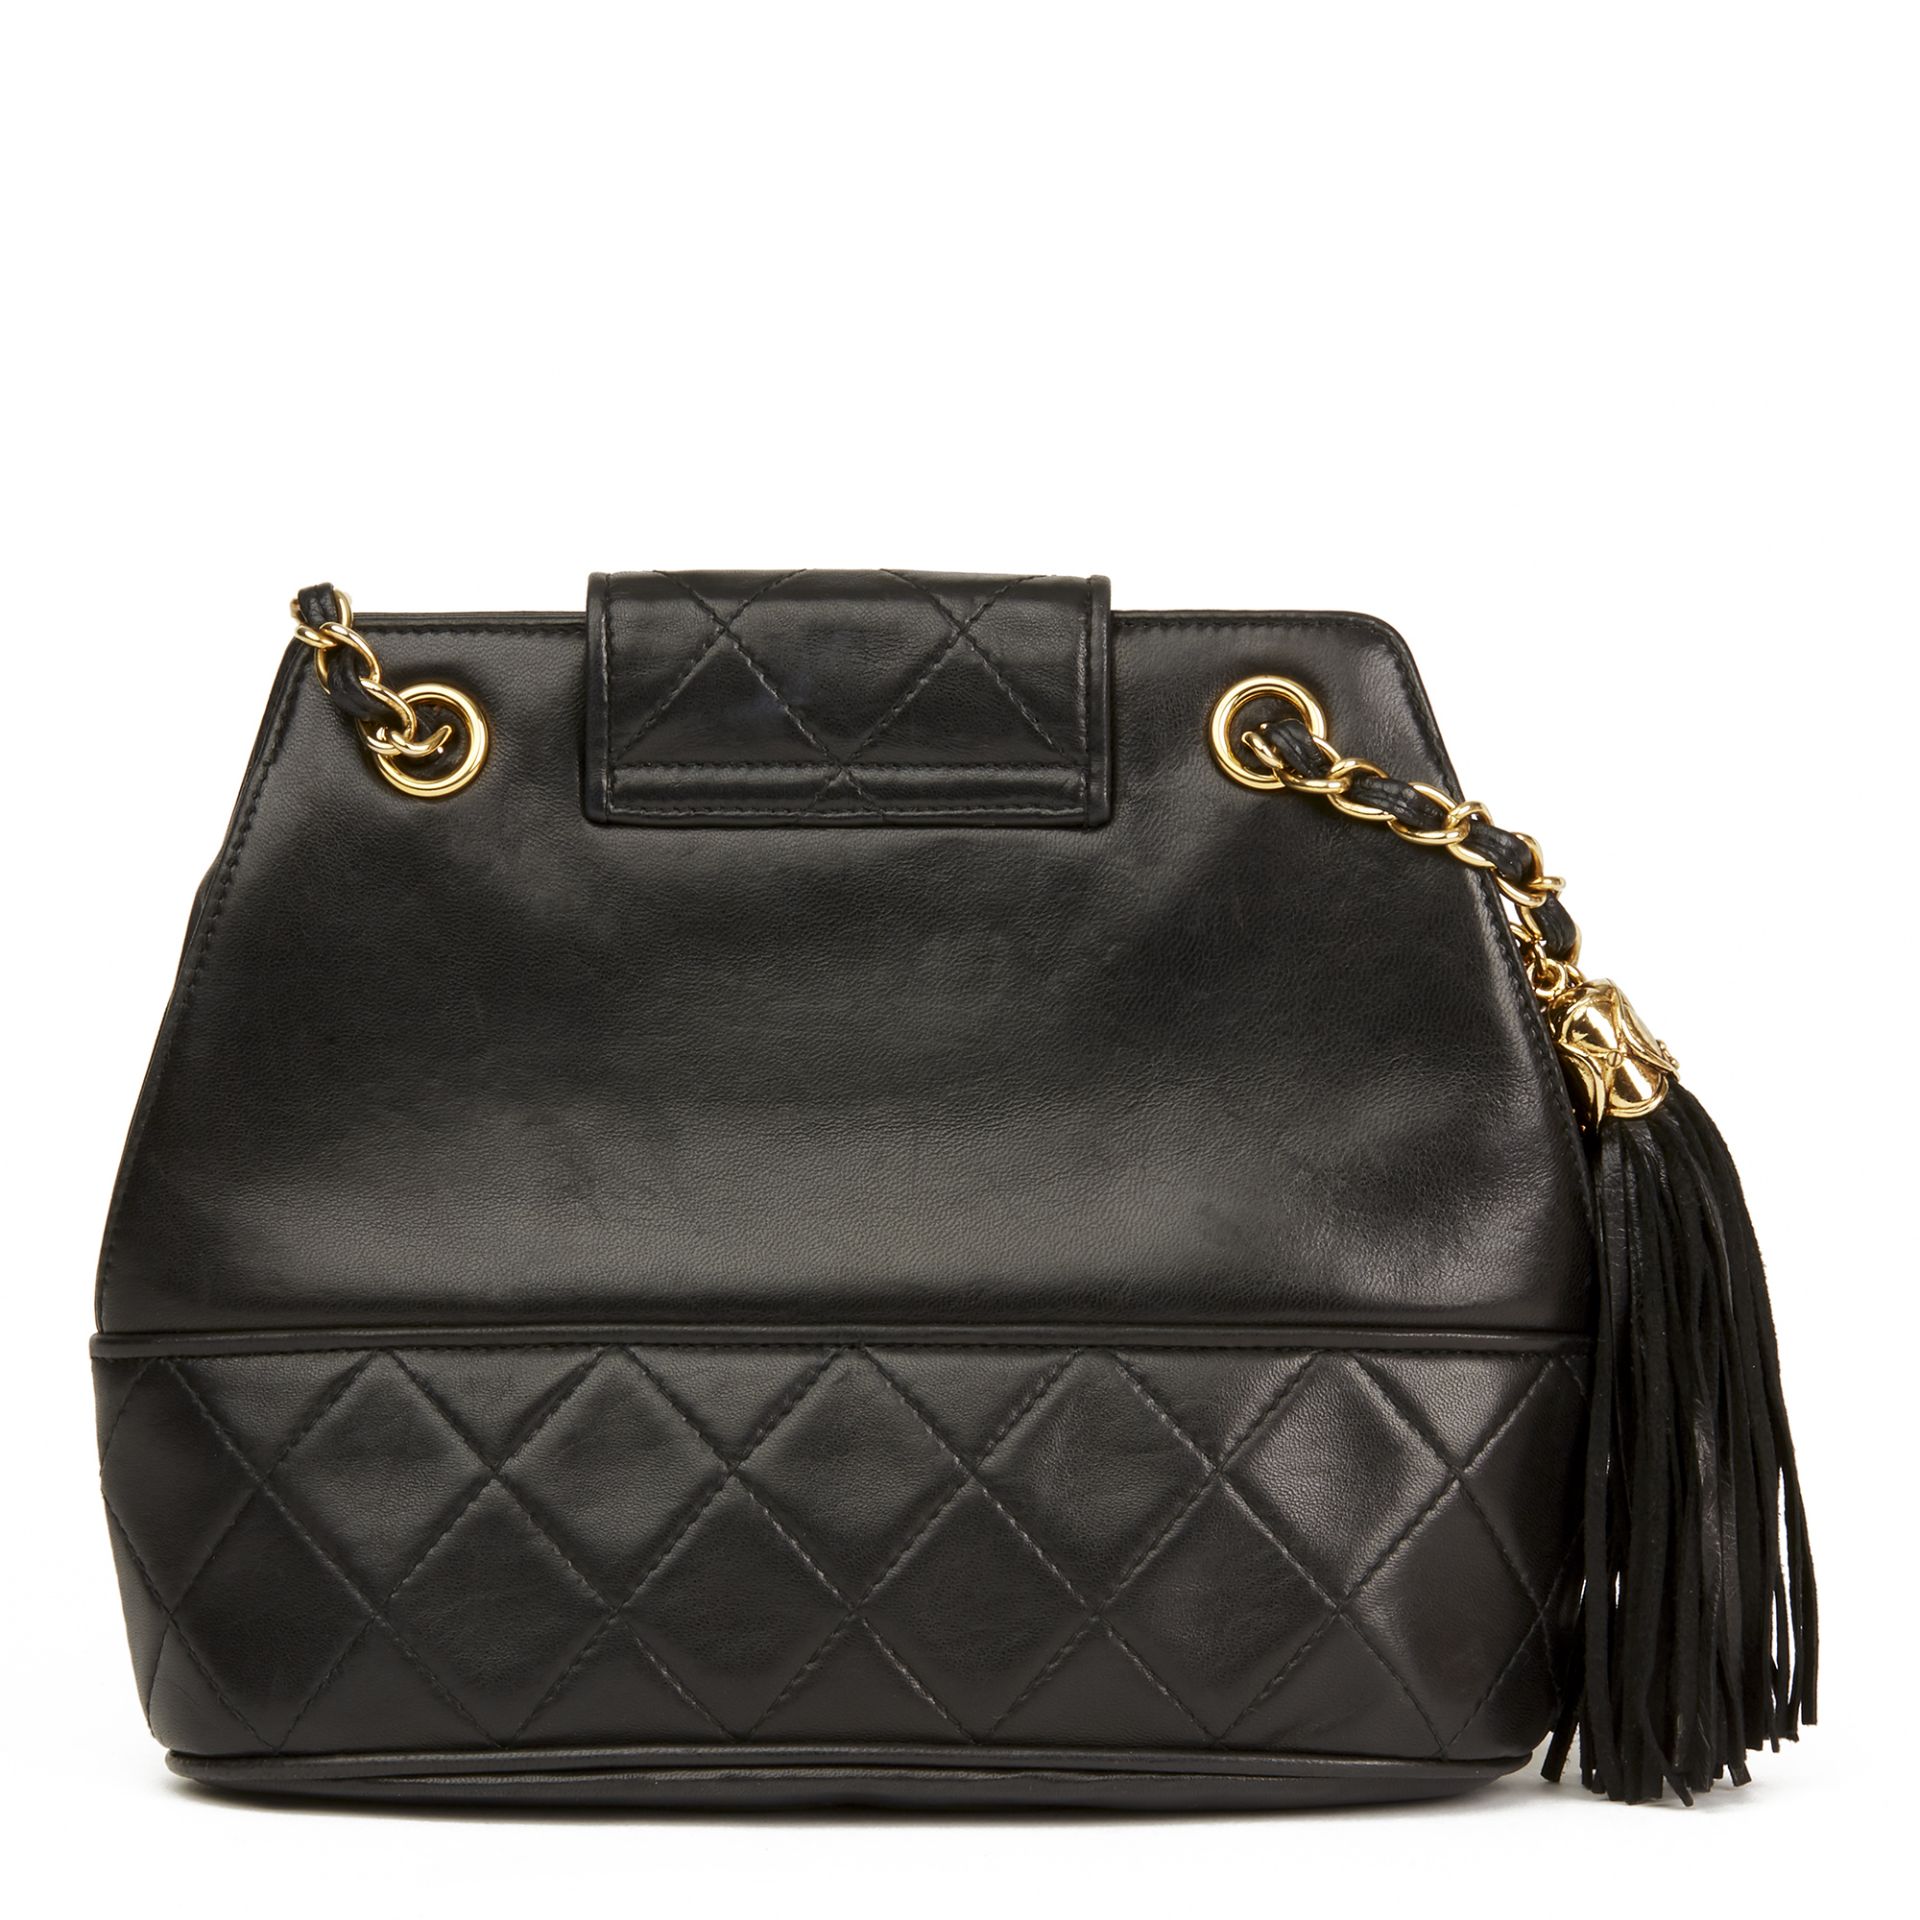 Chanel Black Quilted Lambskin Vintage Timeless Fringe Bucket Bag - Image 9 of 11